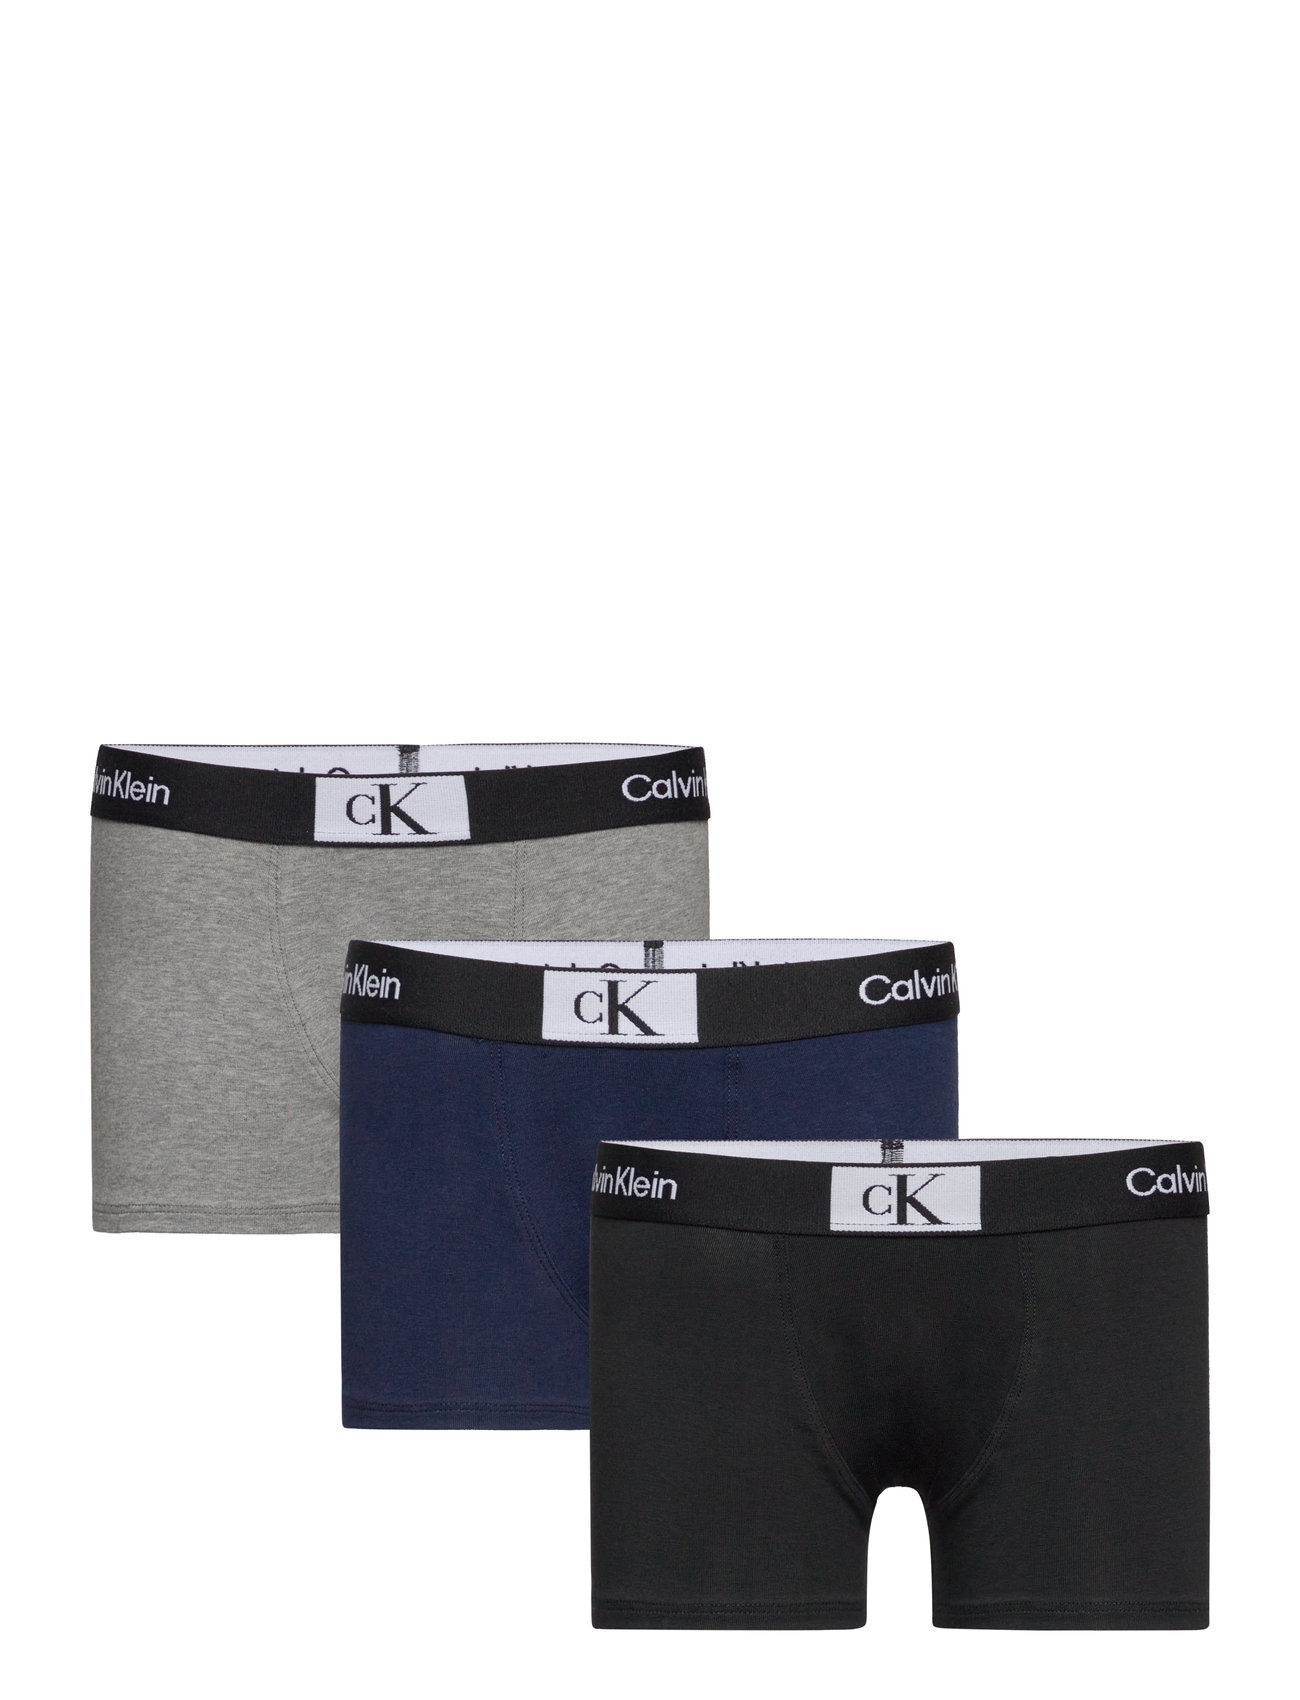 Calvin Klein 3pk Trunk – underwear – shop at Booztlet